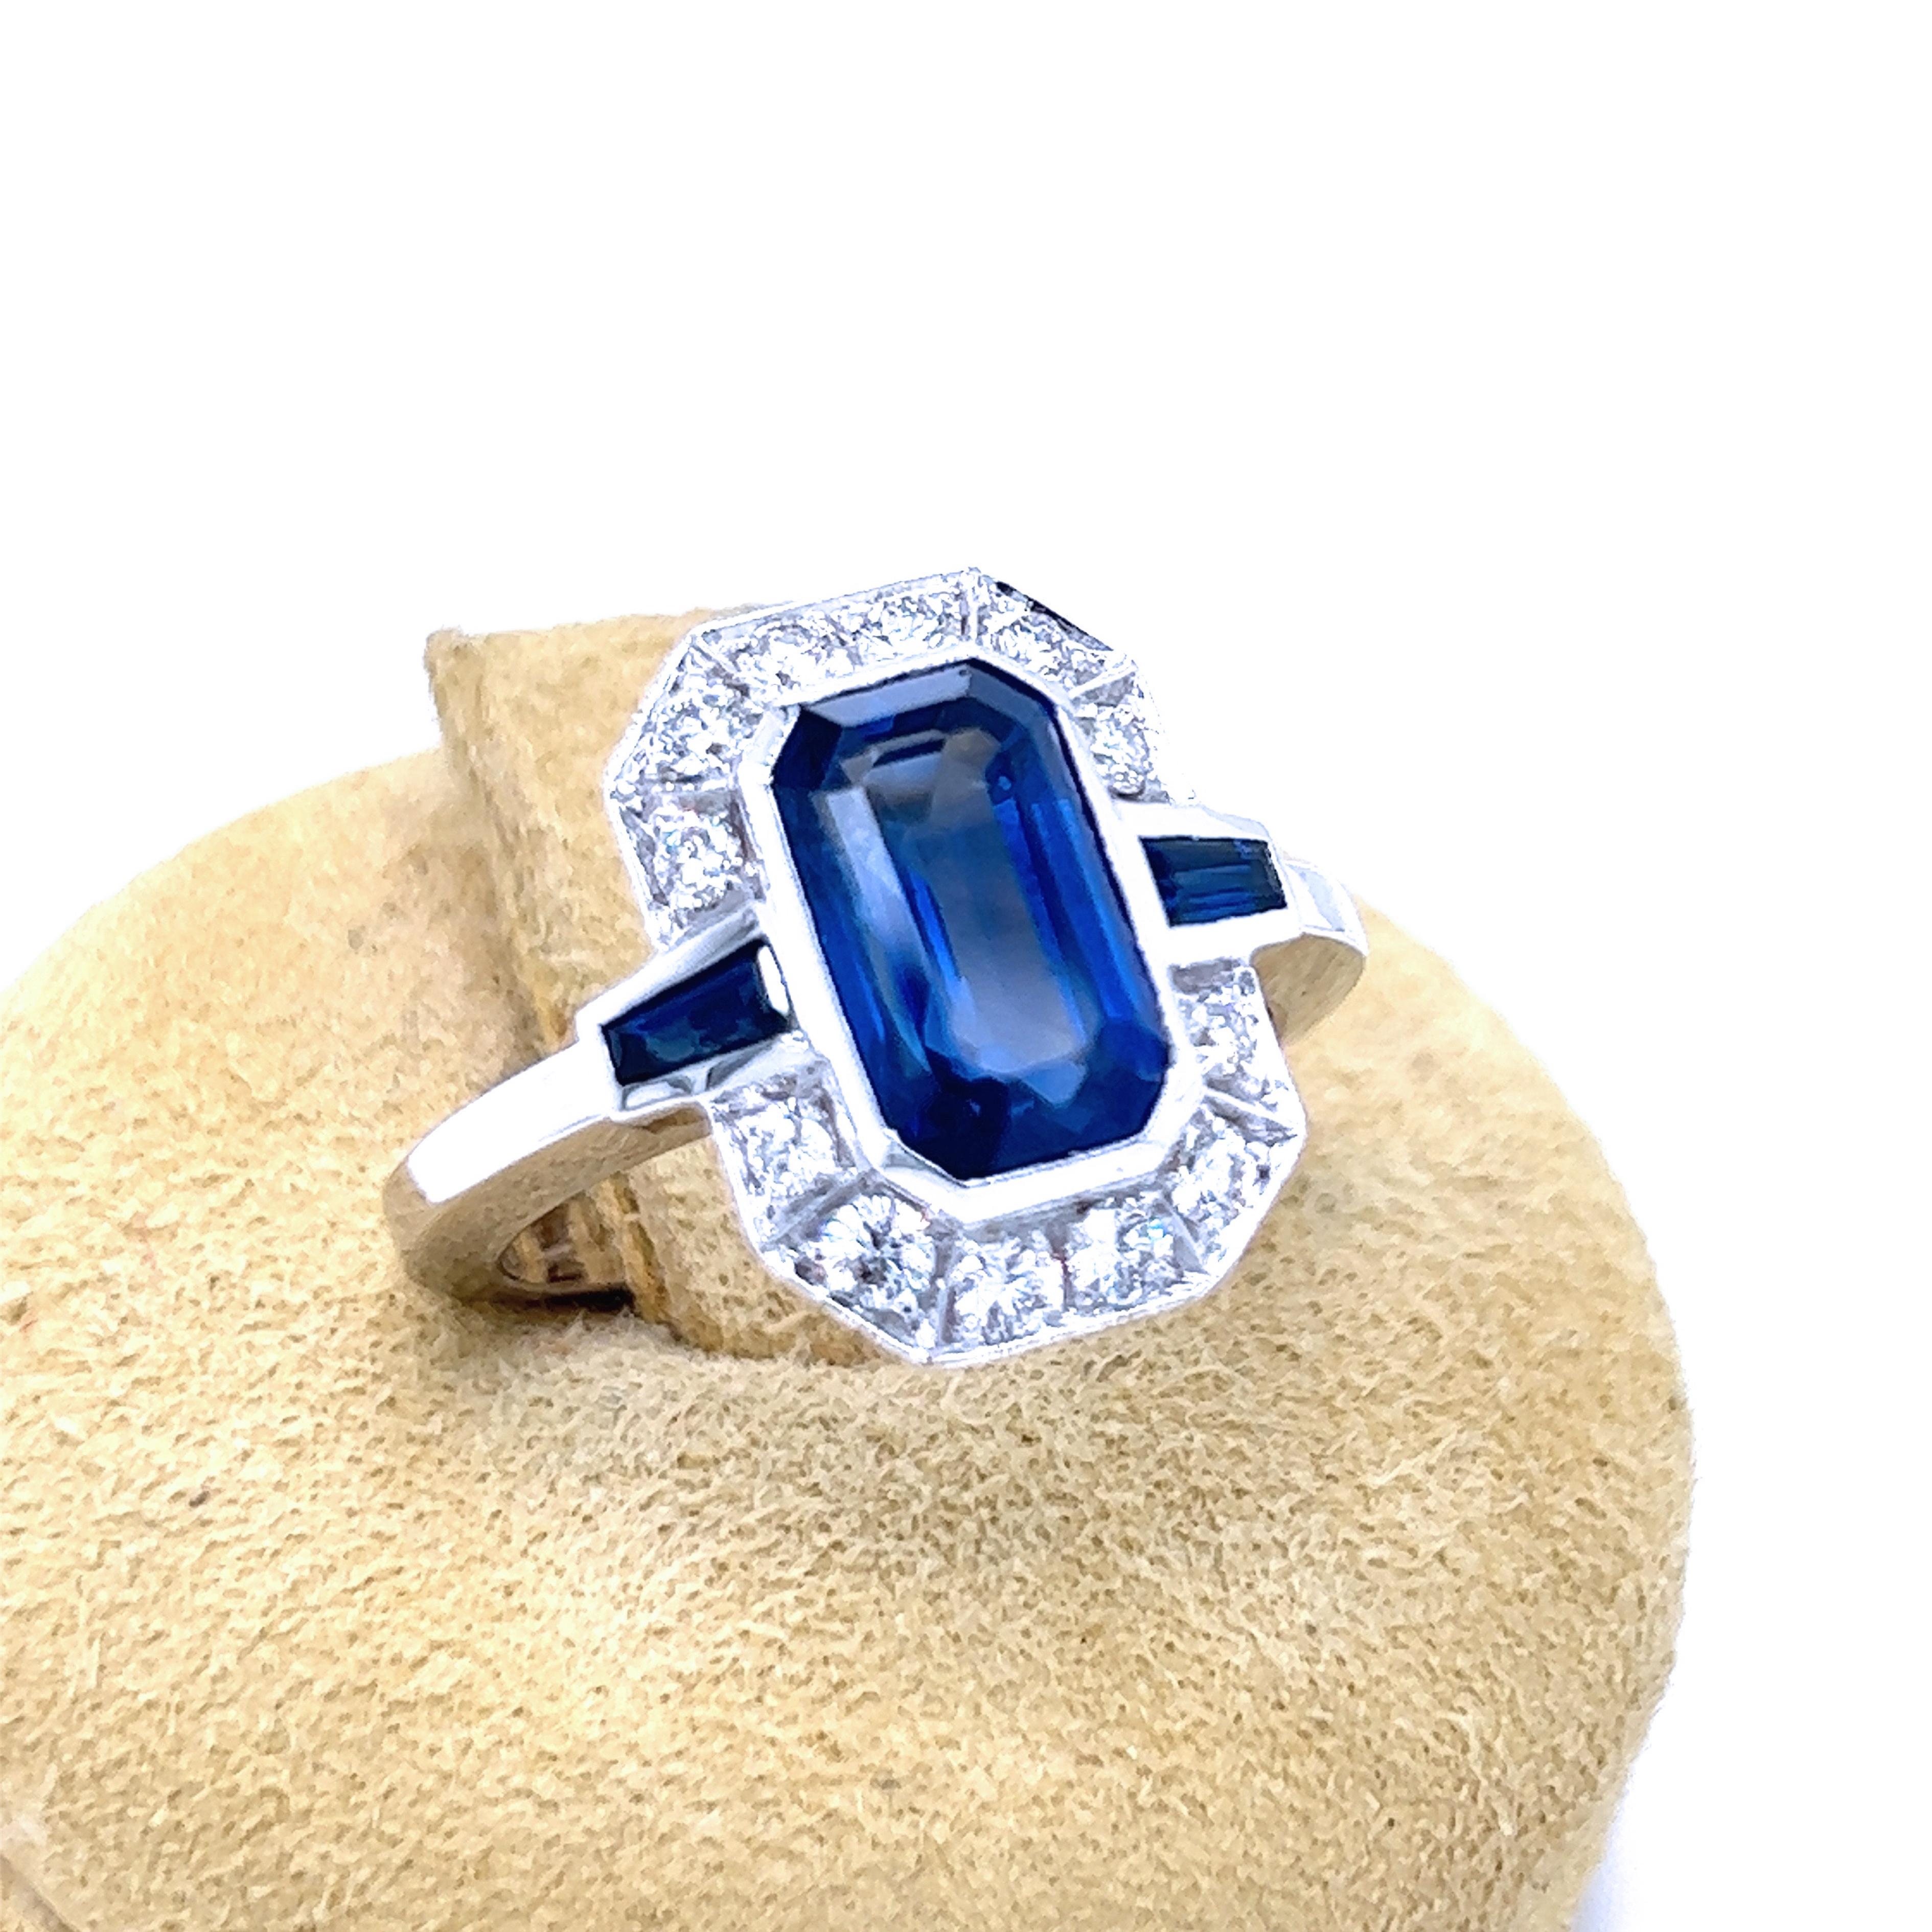 Superbe saphir bleu royal certifié IGI de 3,17 carats (10,26 x 6,10 x 4,5 mm) taillé en émeraude dans une monture en or blanc de qualité supérieure de 0,43 carats avec diamant blanc taille brillant et saphir baguette conique de 0,26 carats.
Comme